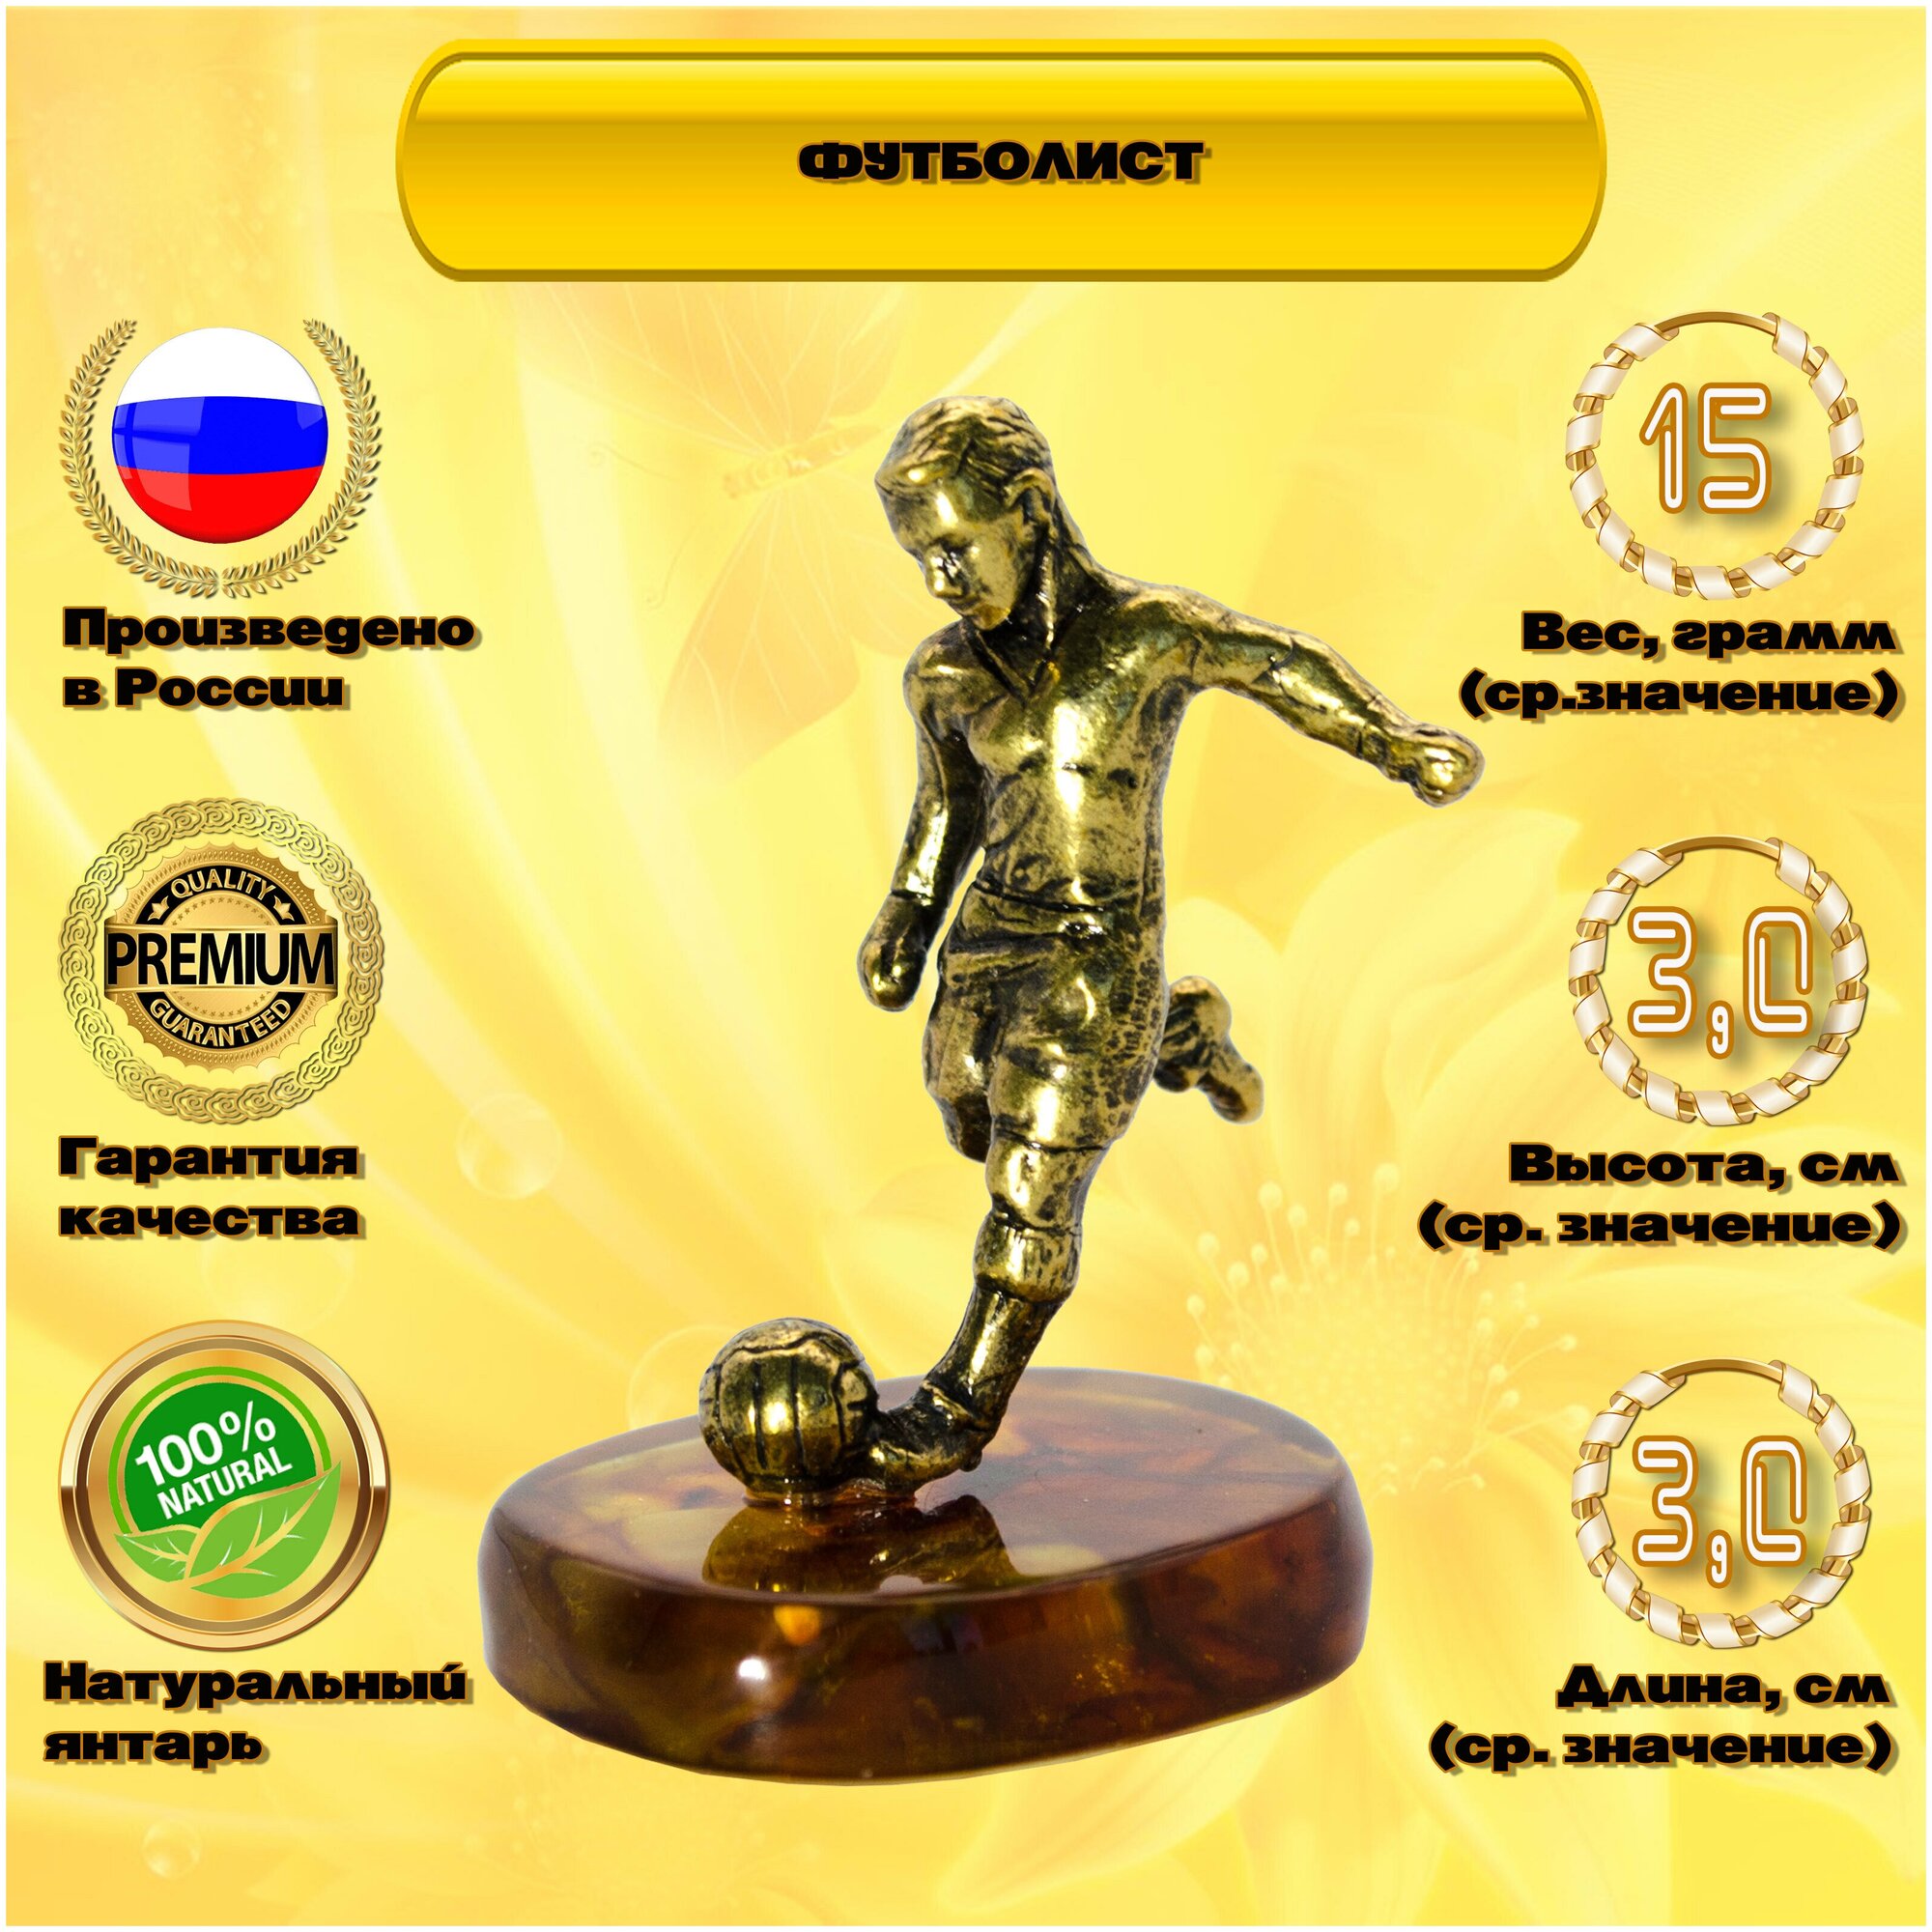 Янтарный сувенир " Футболист", Подарок любителям футбола. Русские сувениры и подарки